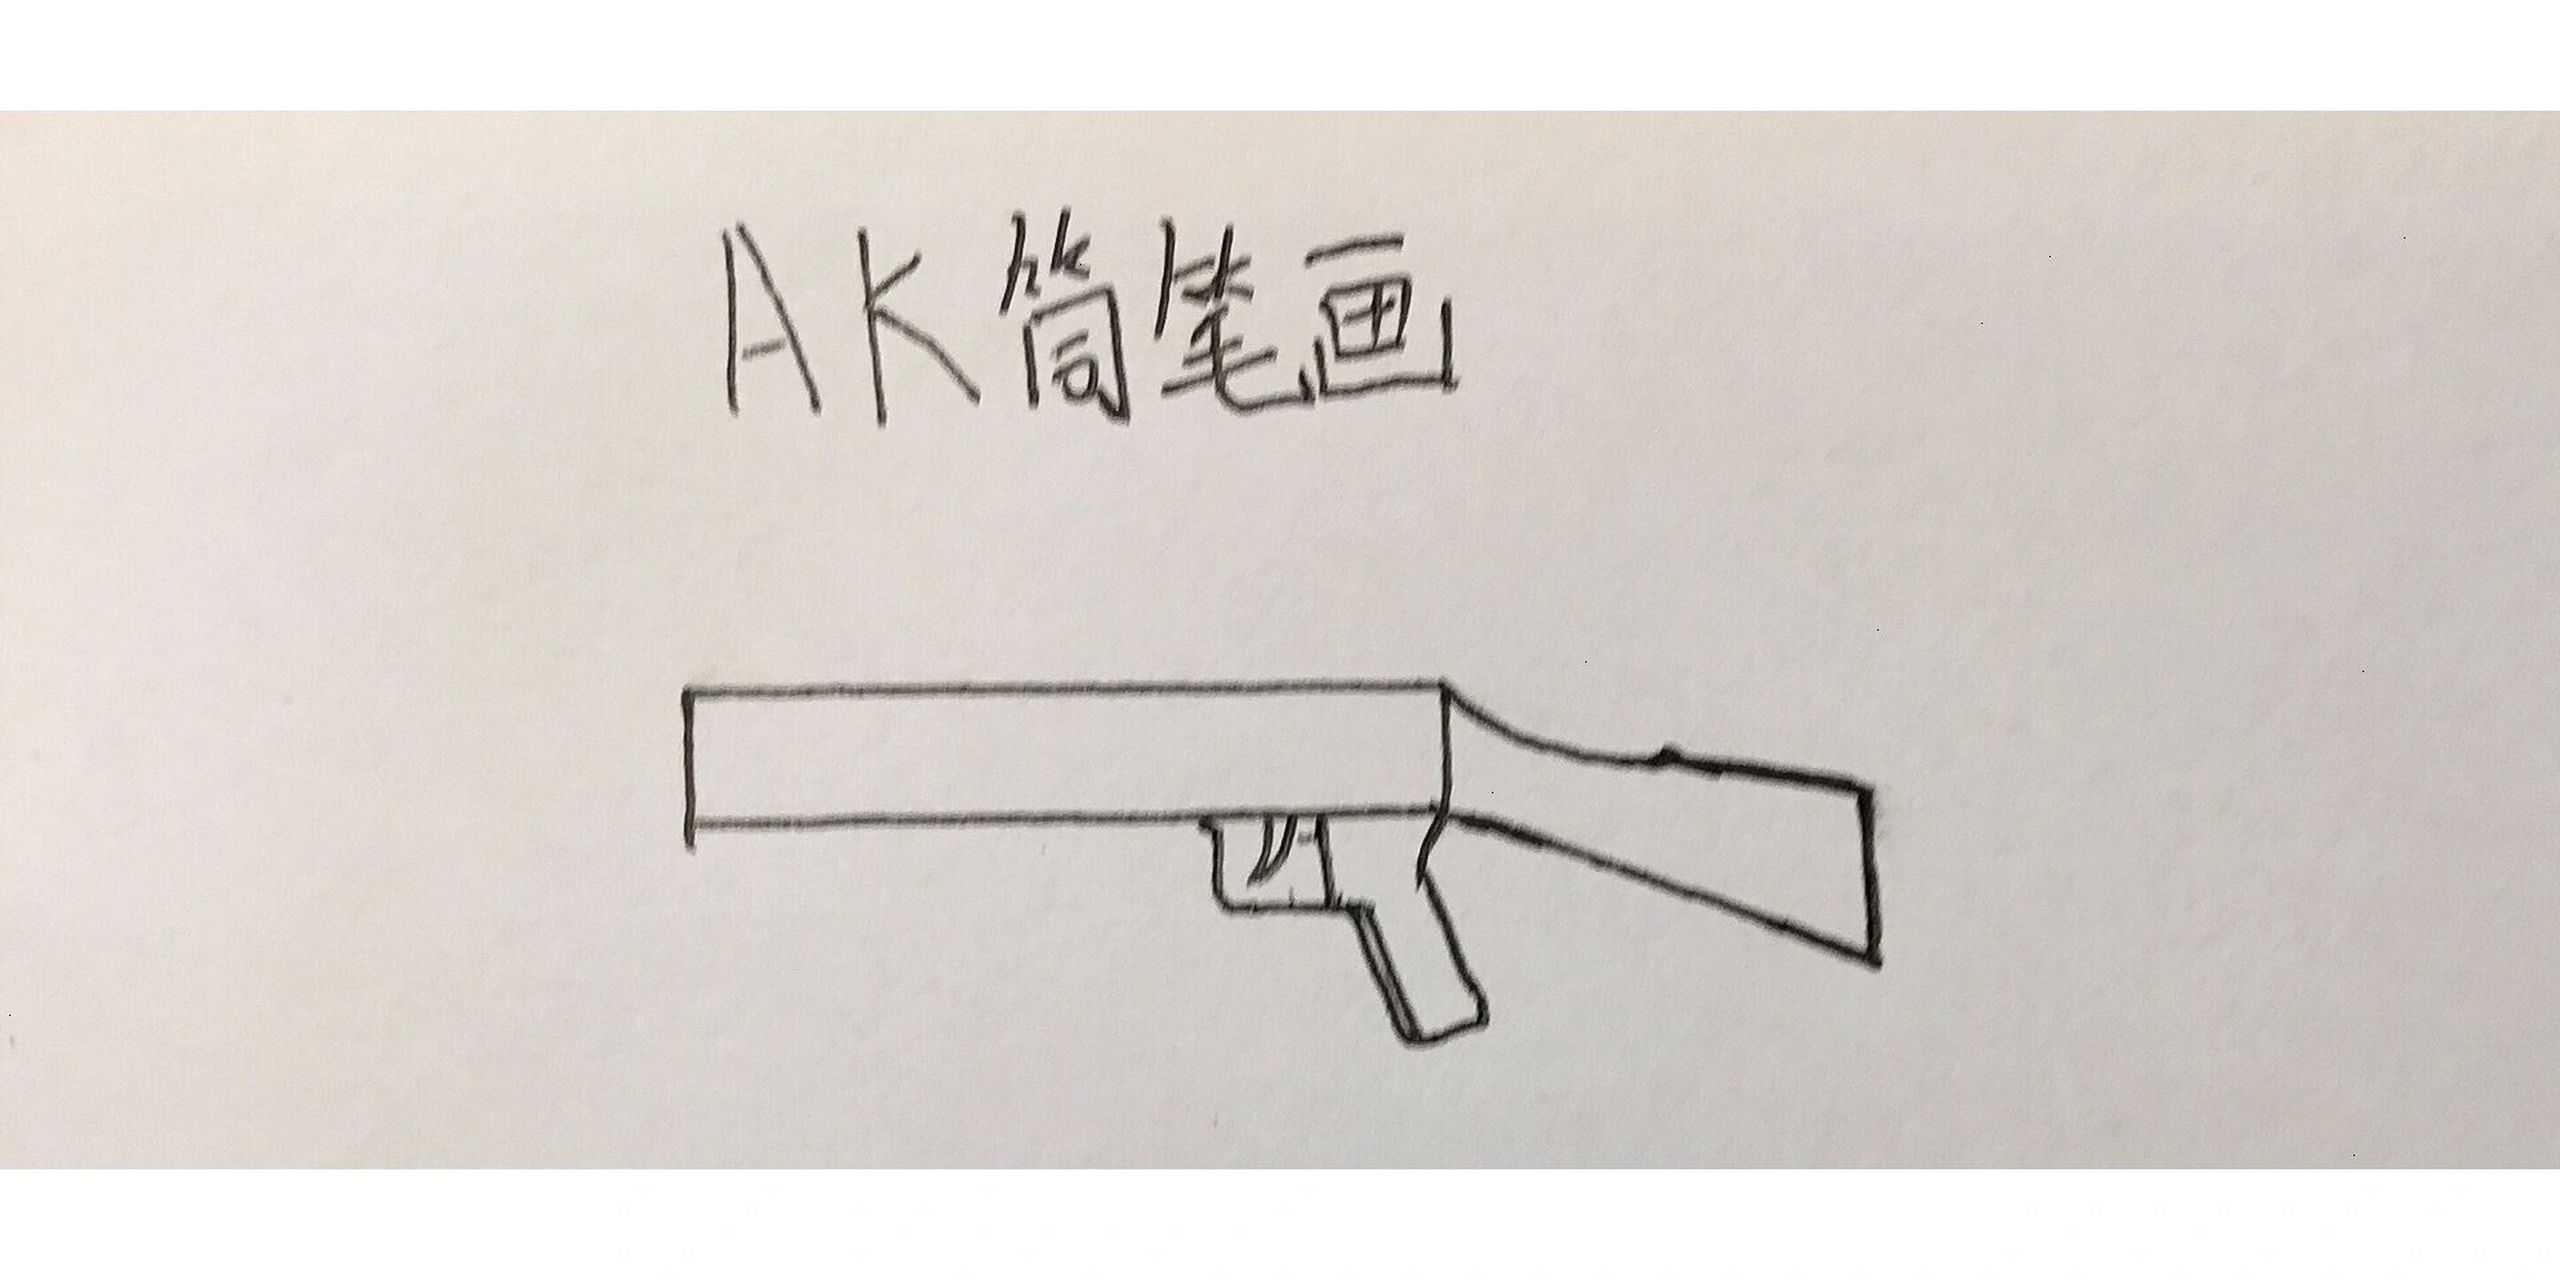 AK简笔画 简单图片